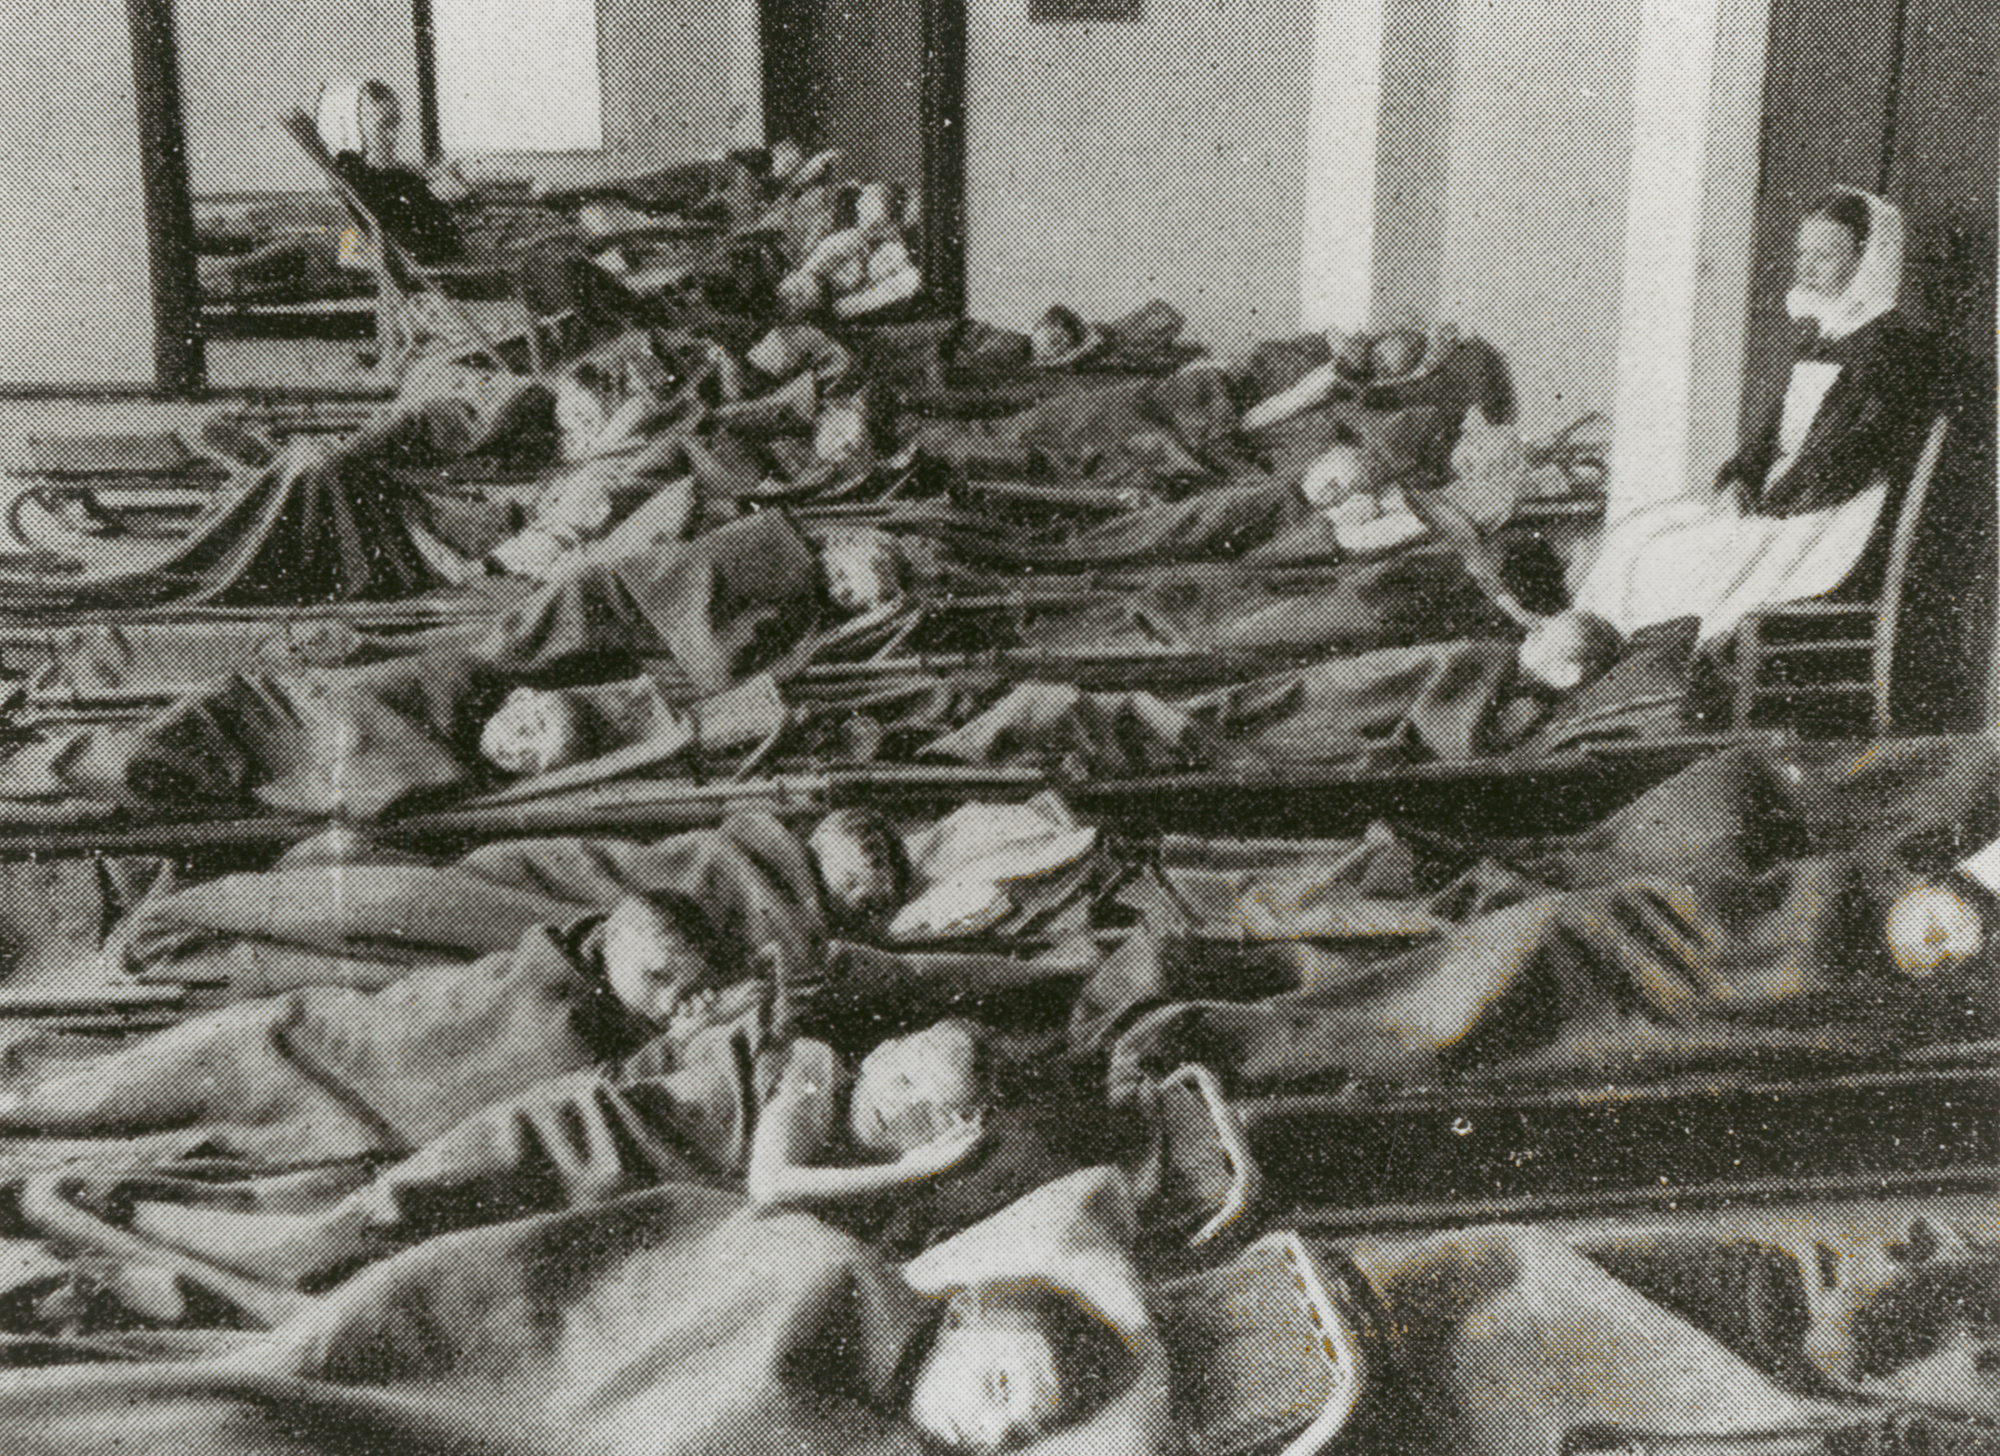 Tuberkoloseheilstätte, 1947. Foto: Stiftung Diakonissenhaus